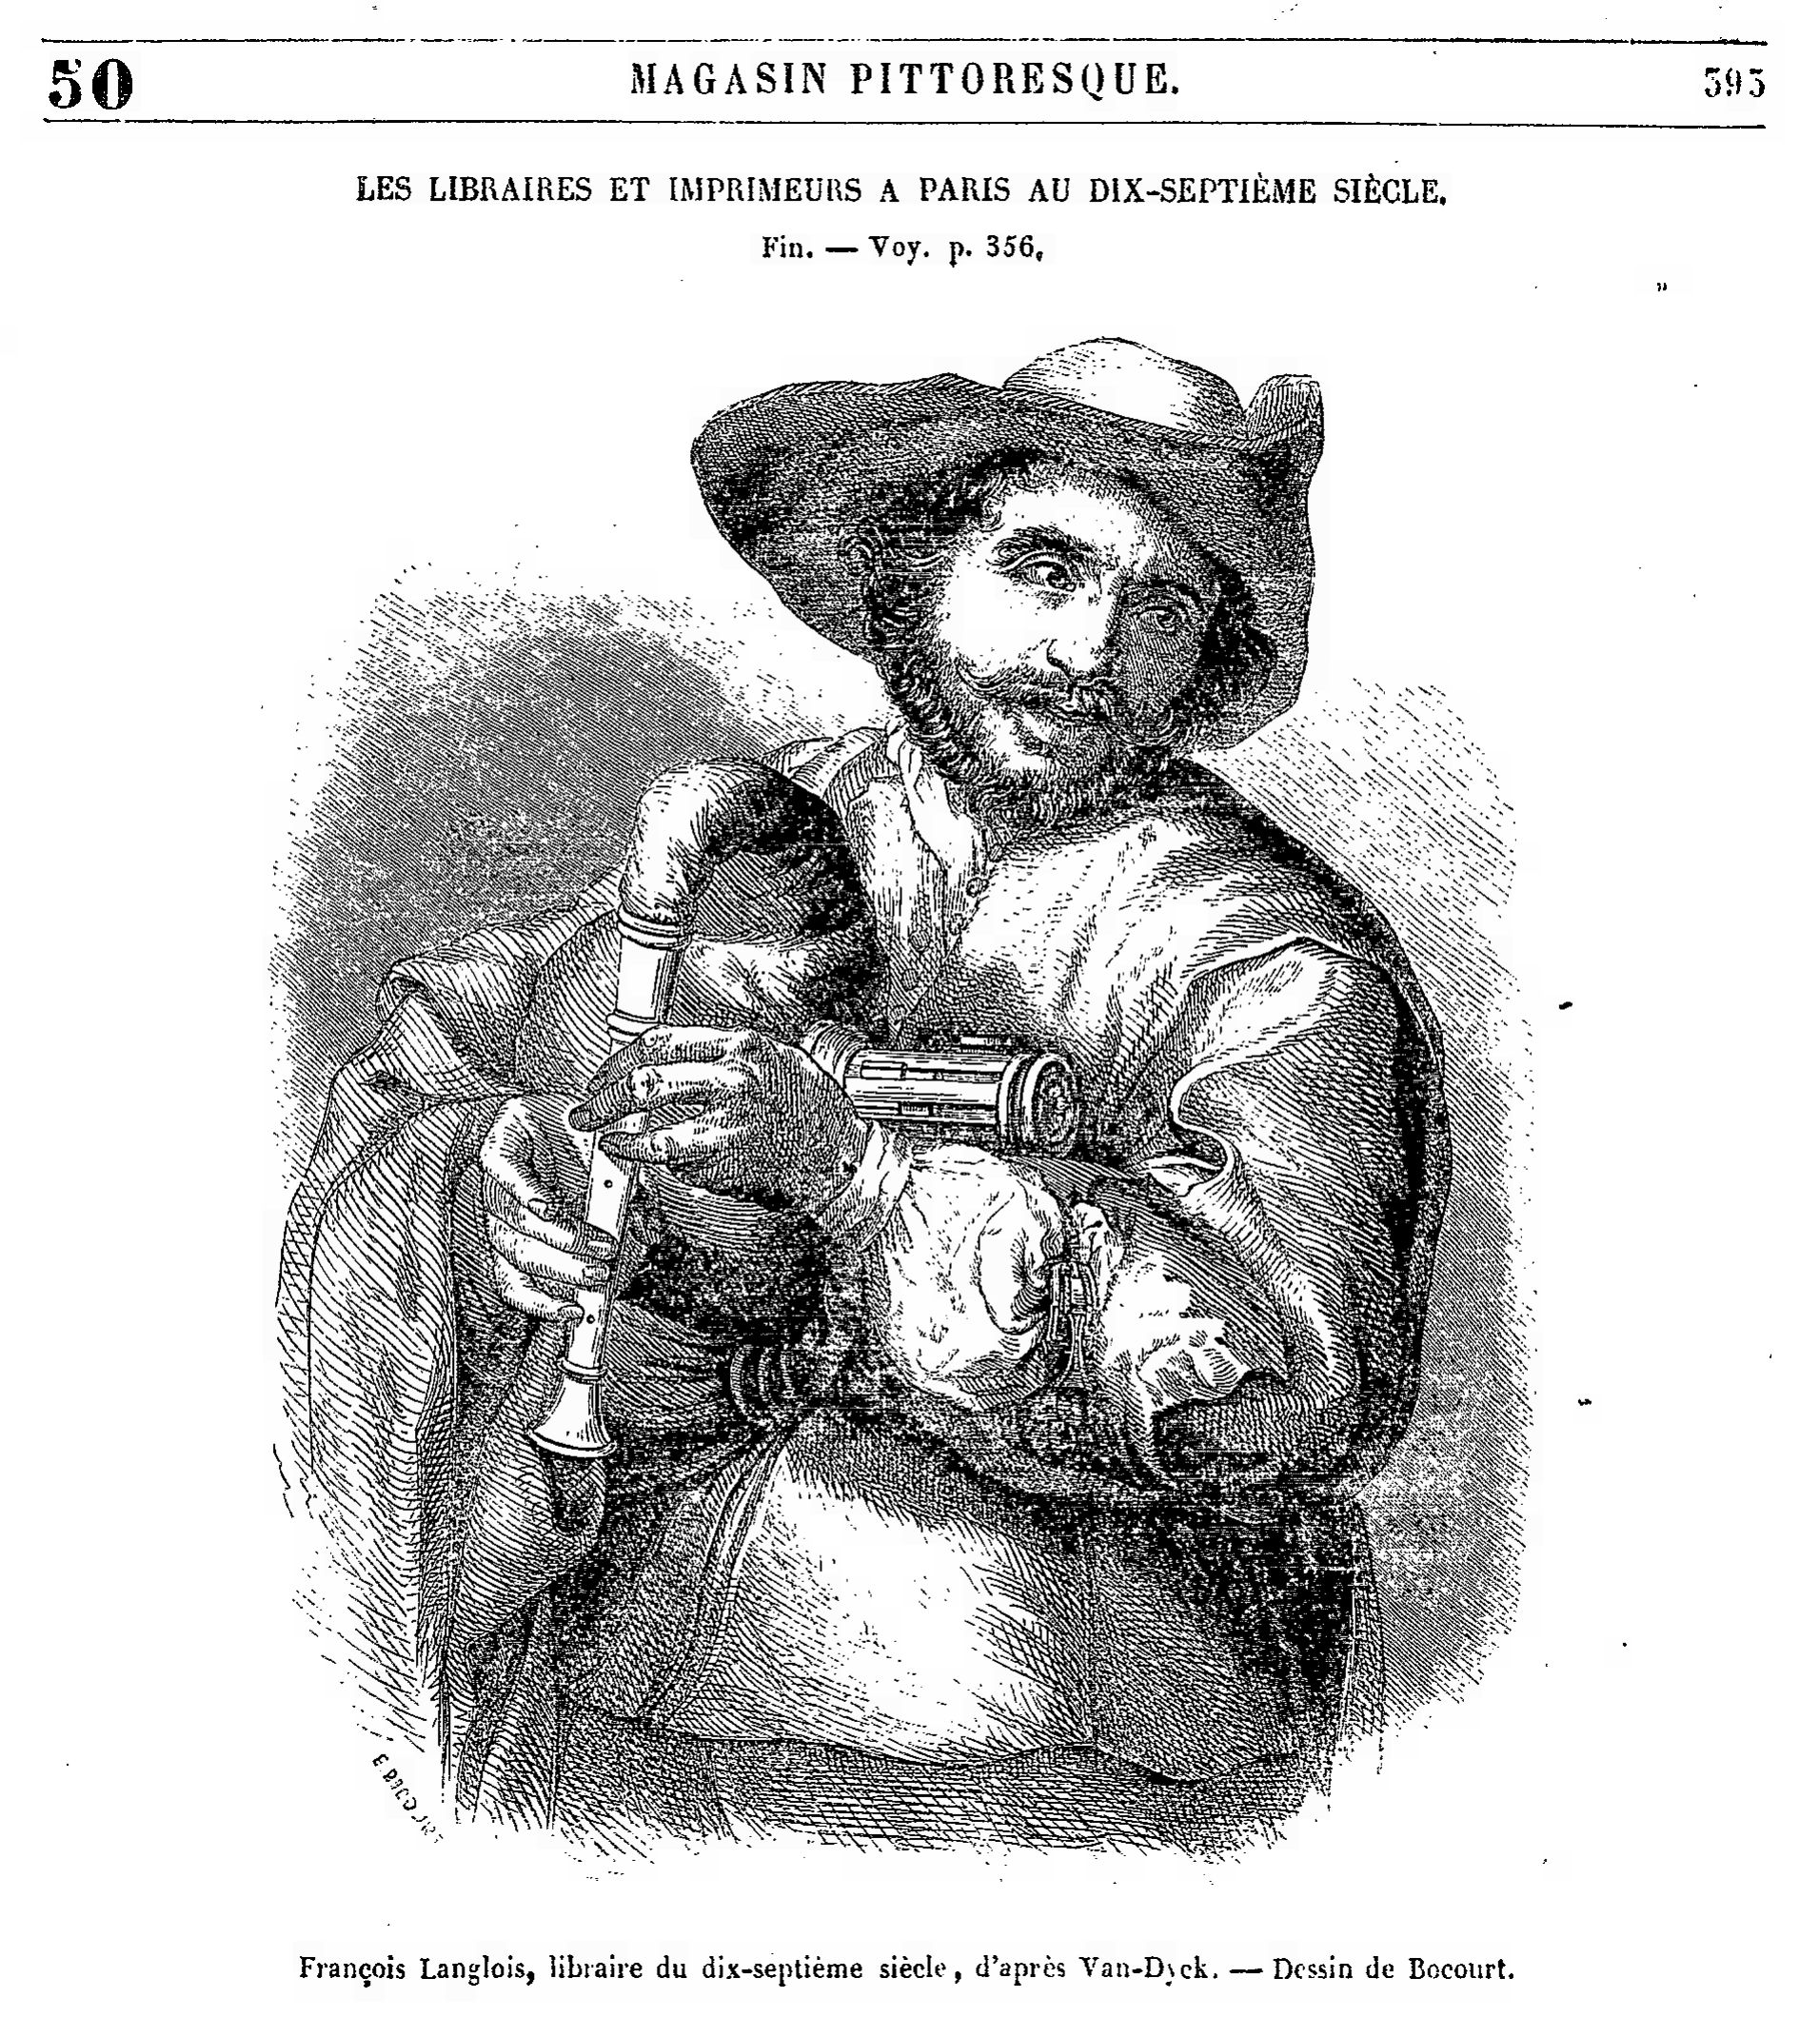 François Langlois, libraire du dix-septième siècle, E. BOCOURT d'après Anton VAN DYCK, gravure, vers 1852